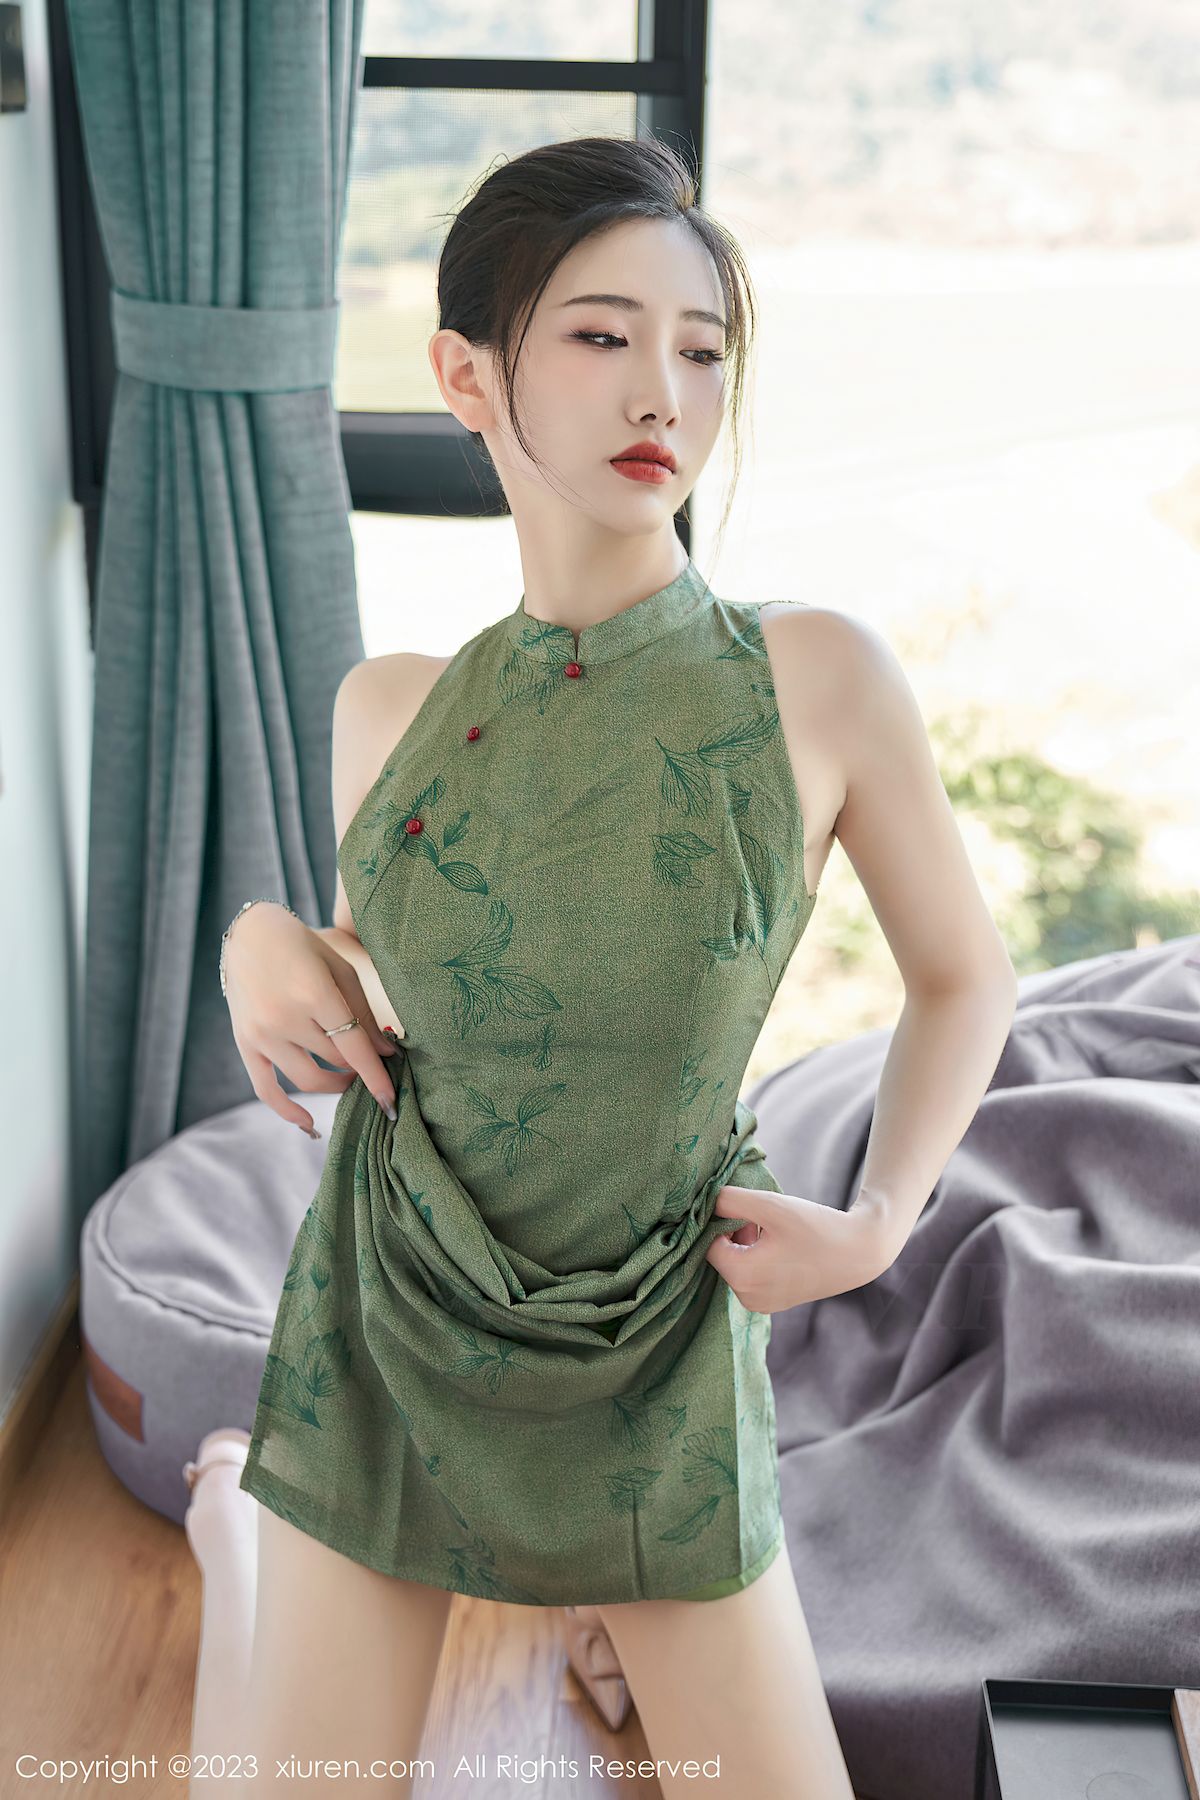 沈青黛翠绿色旗袍搭配曼妙身姿性感写真